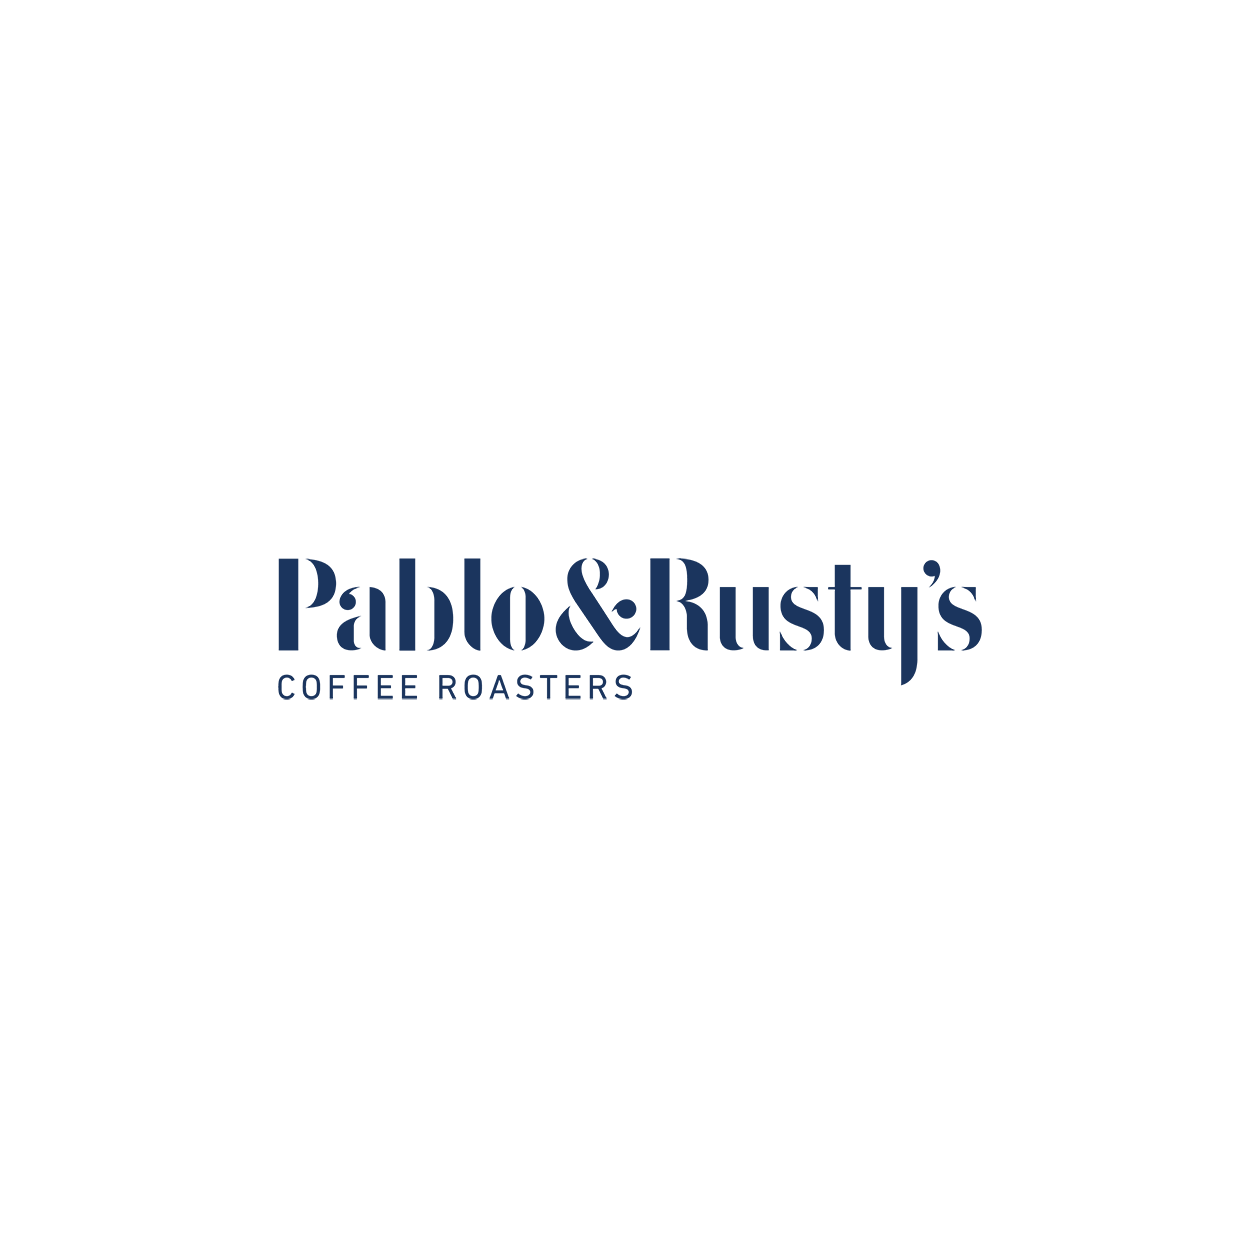 Pablo & Rusty's